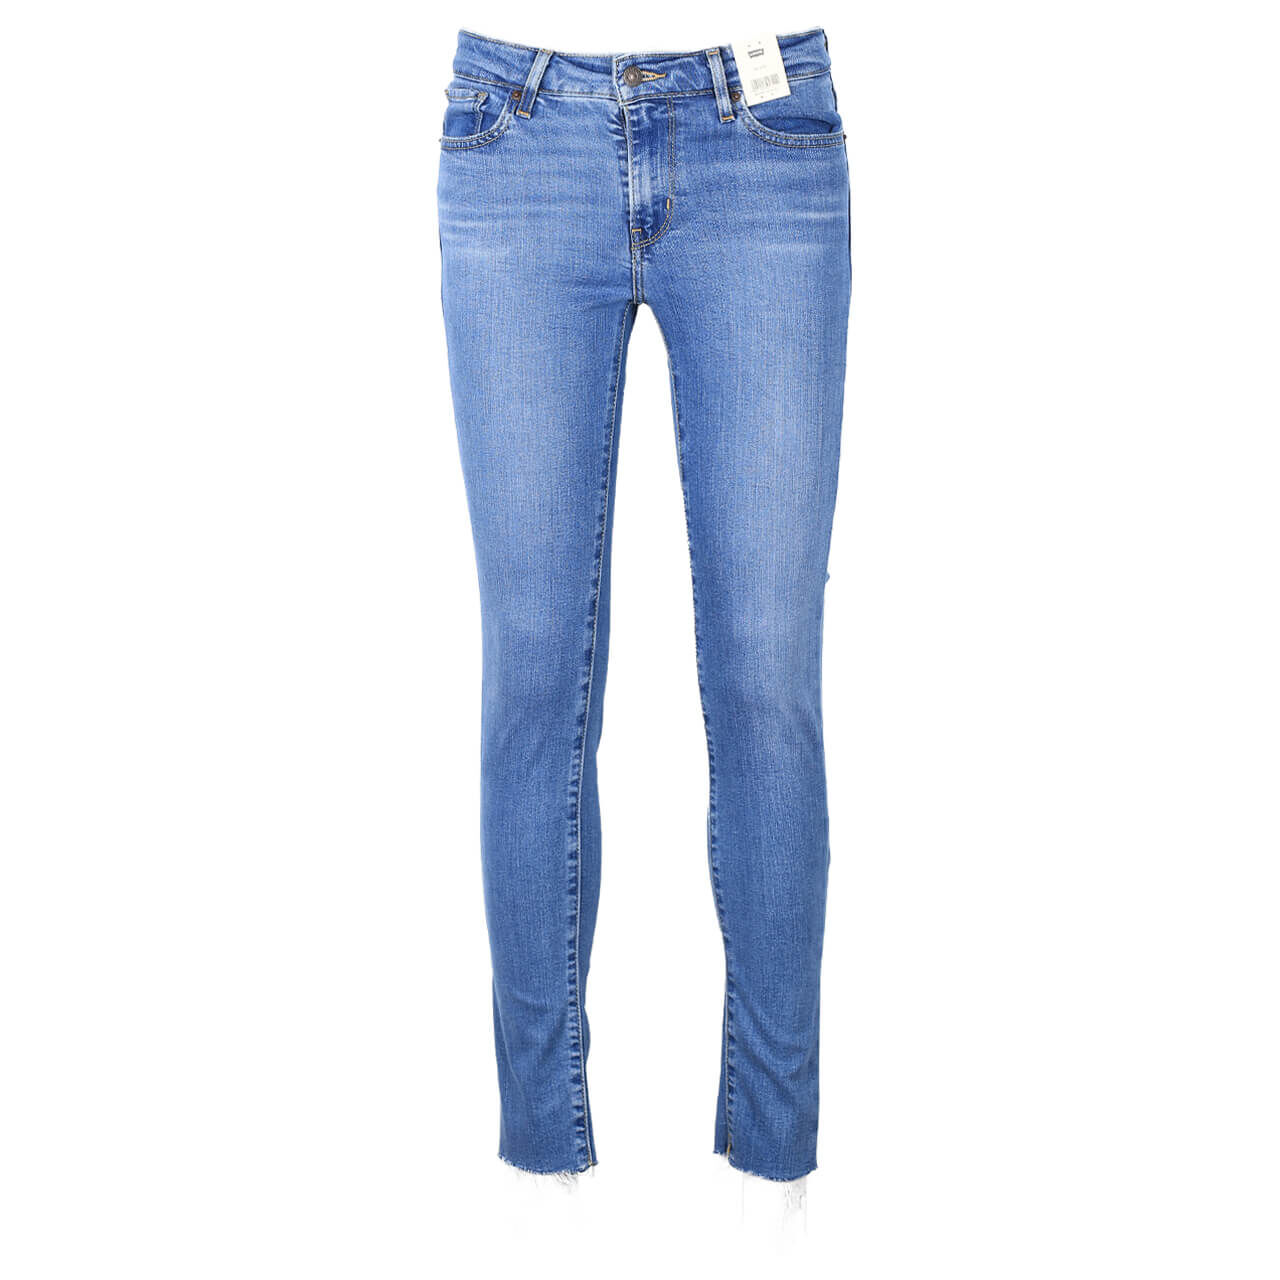 Levis Jeans 711 Skinny für Damen in Blau angewaschen, FarbNr.: 0652